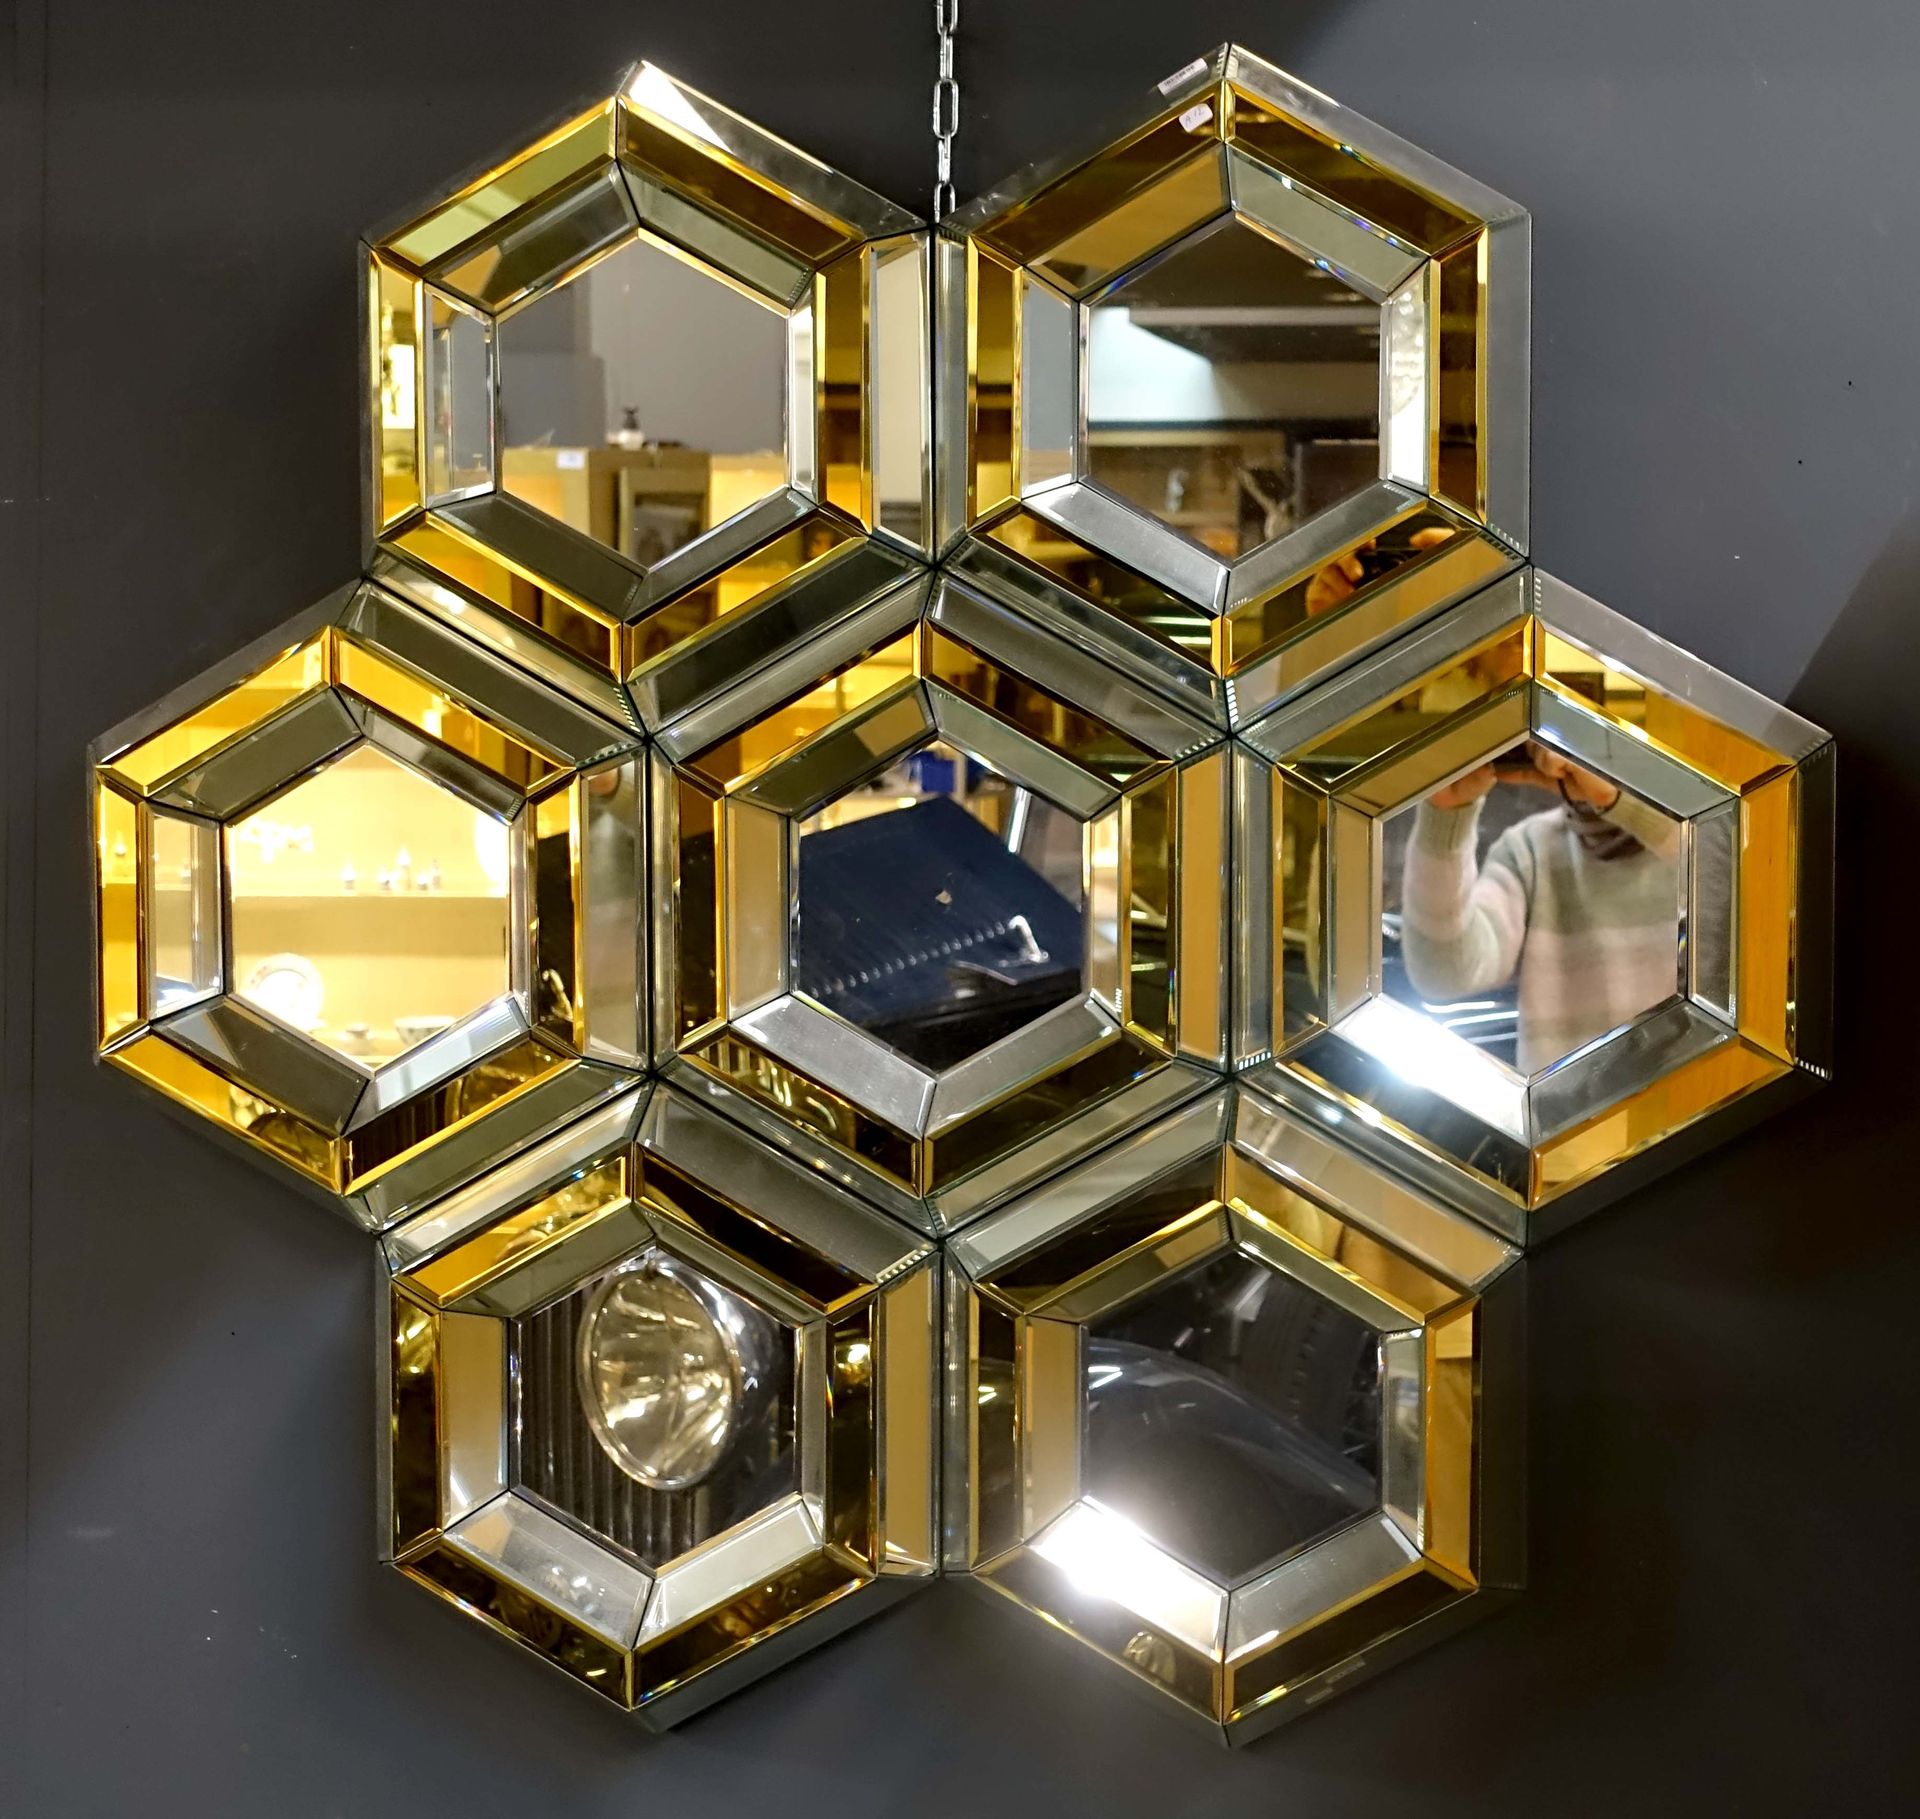 Curieux miroir 由七个斜面六边形组成。